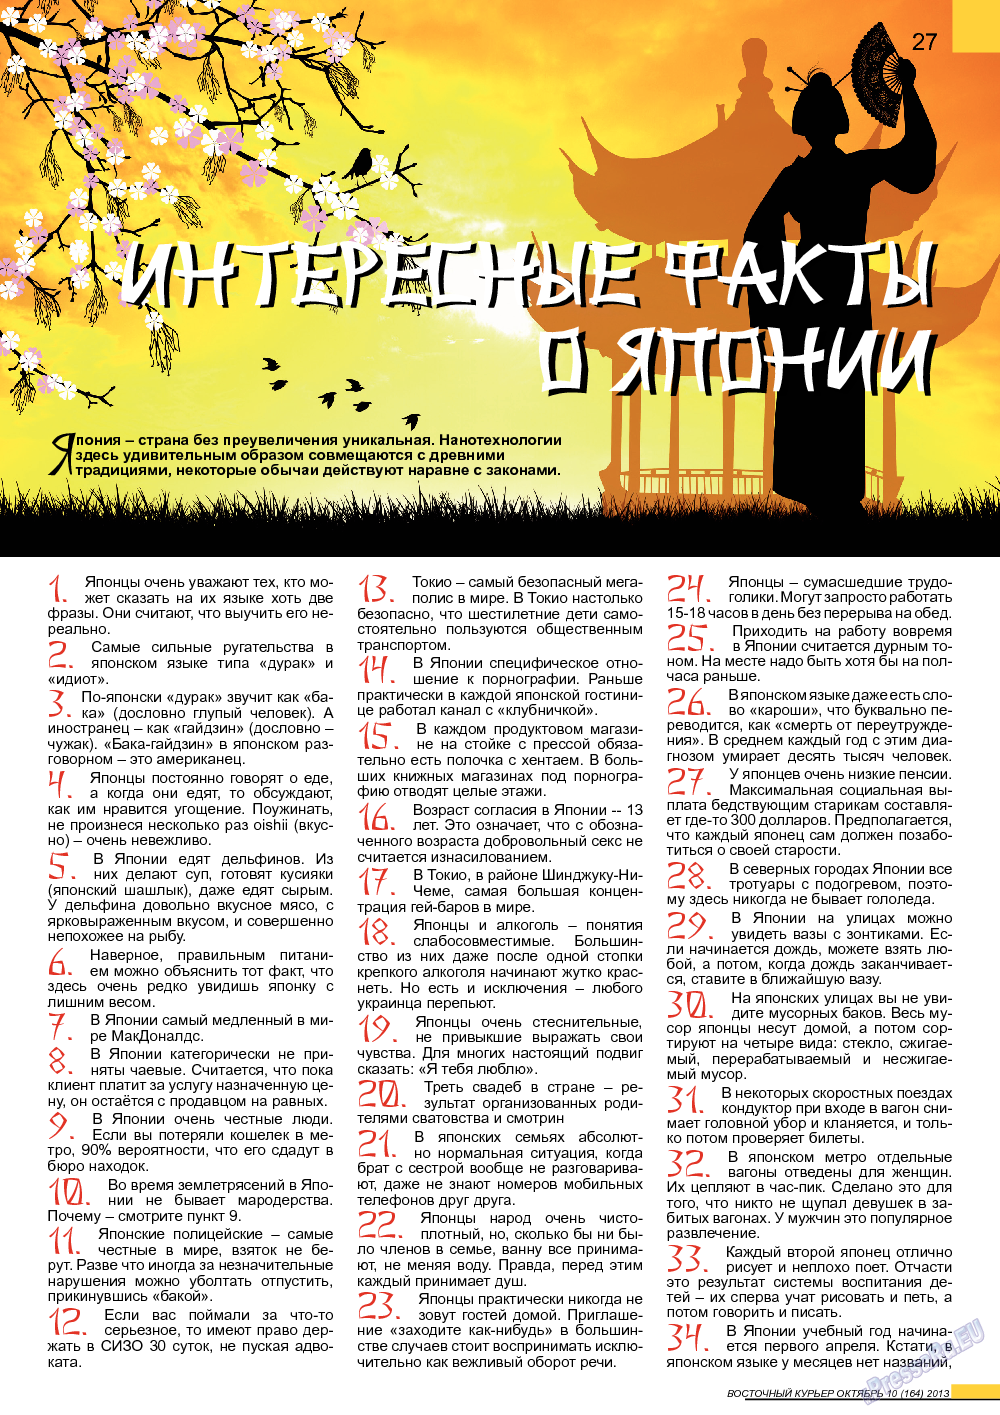 Восточный курьер, журнал. 2013 №10 стр.27